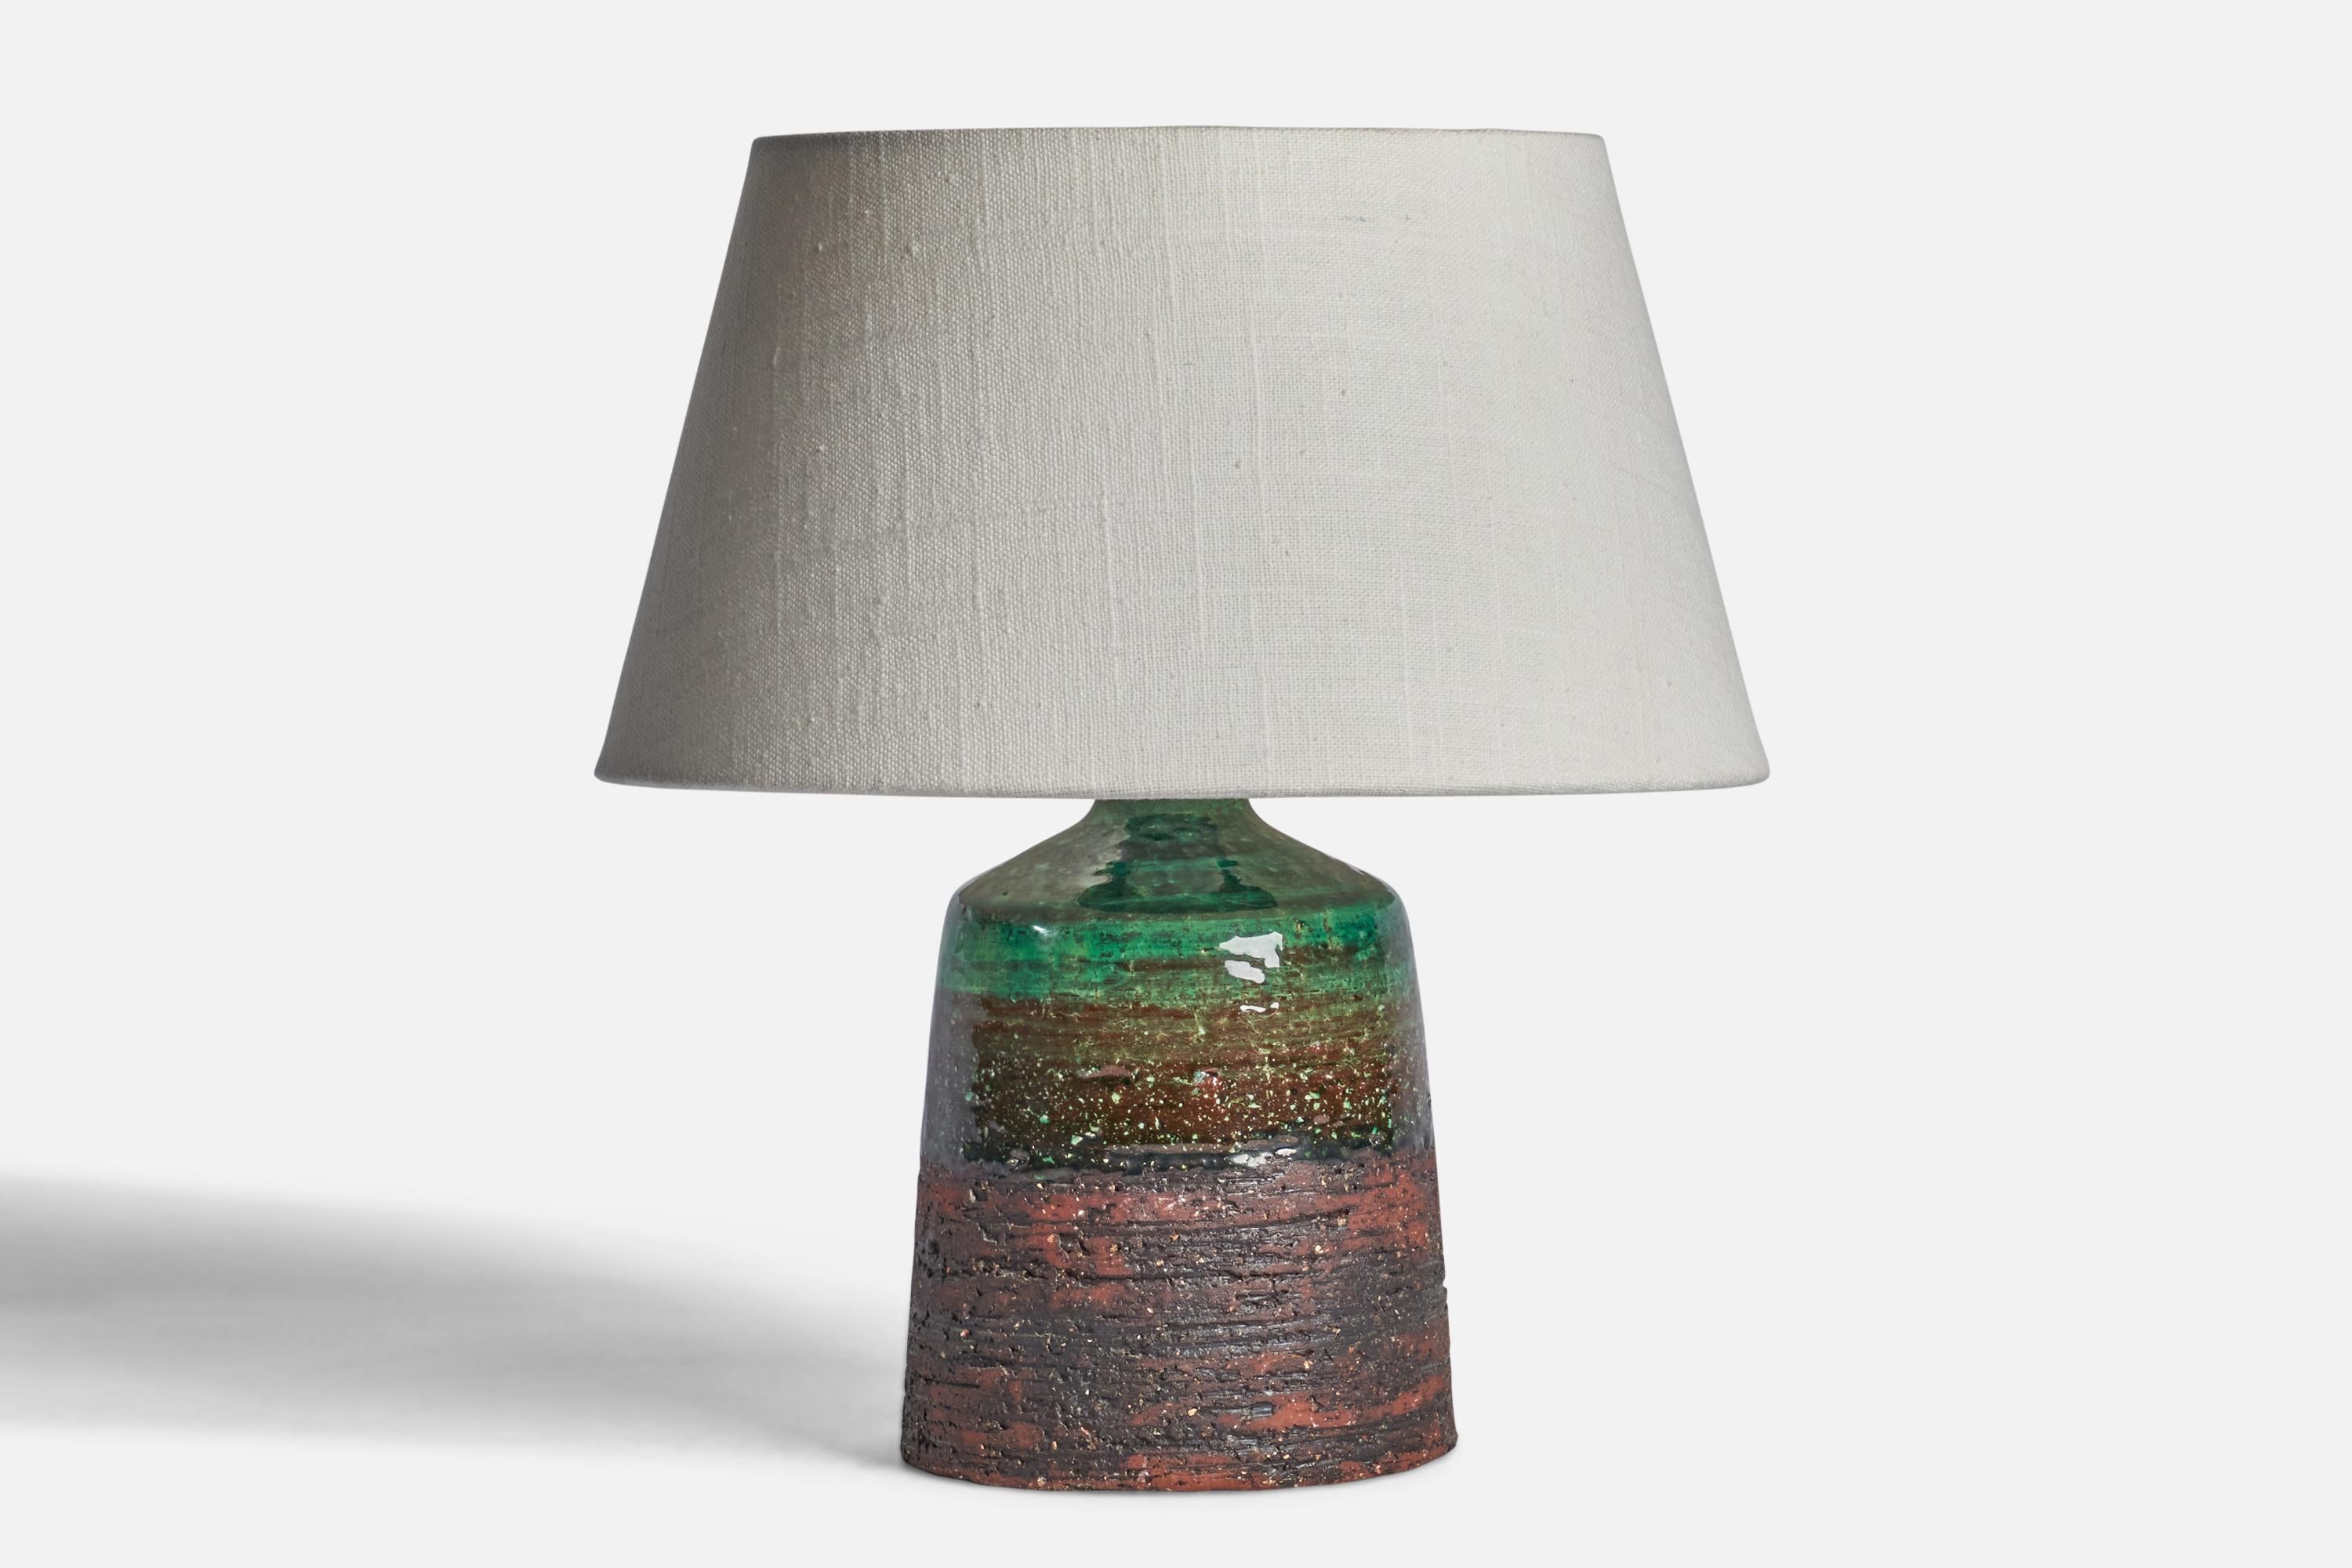 Tischlampe aus grünem und rotem Steingut, entworfen und hergestellt von Tilgmans Keramik, Schweden, 1960er Jahre.

Abmessungen der Lampe (Zoll): 9,65